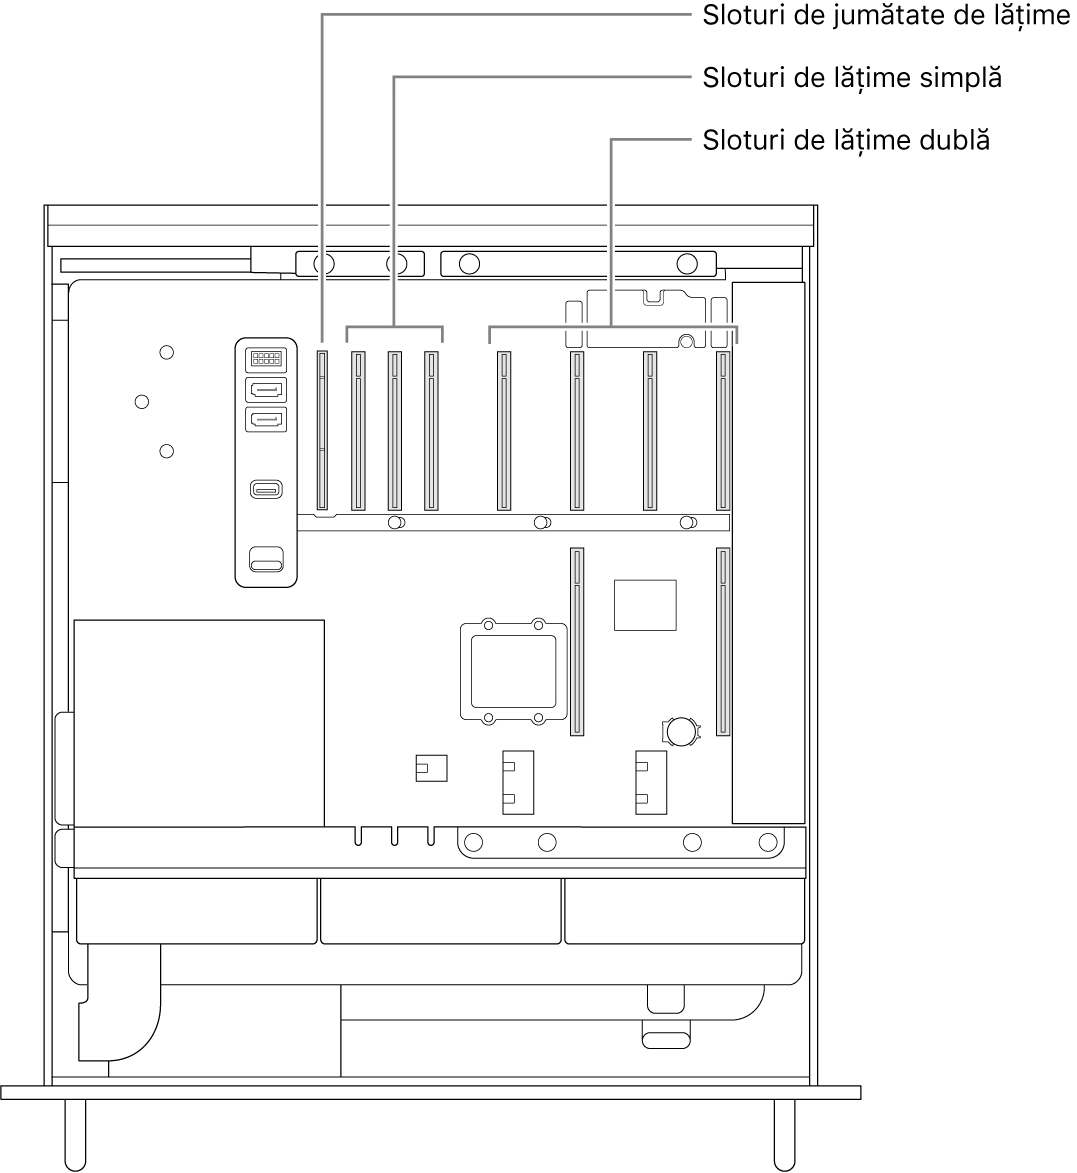 Partea laterală a Mac Pro-ului deschisă, cu explicații care indică locul unde se află cele patru sloturi de lungime dublă, cele trei sloturi de lungime simplă și slotul de jumătate de lungime.